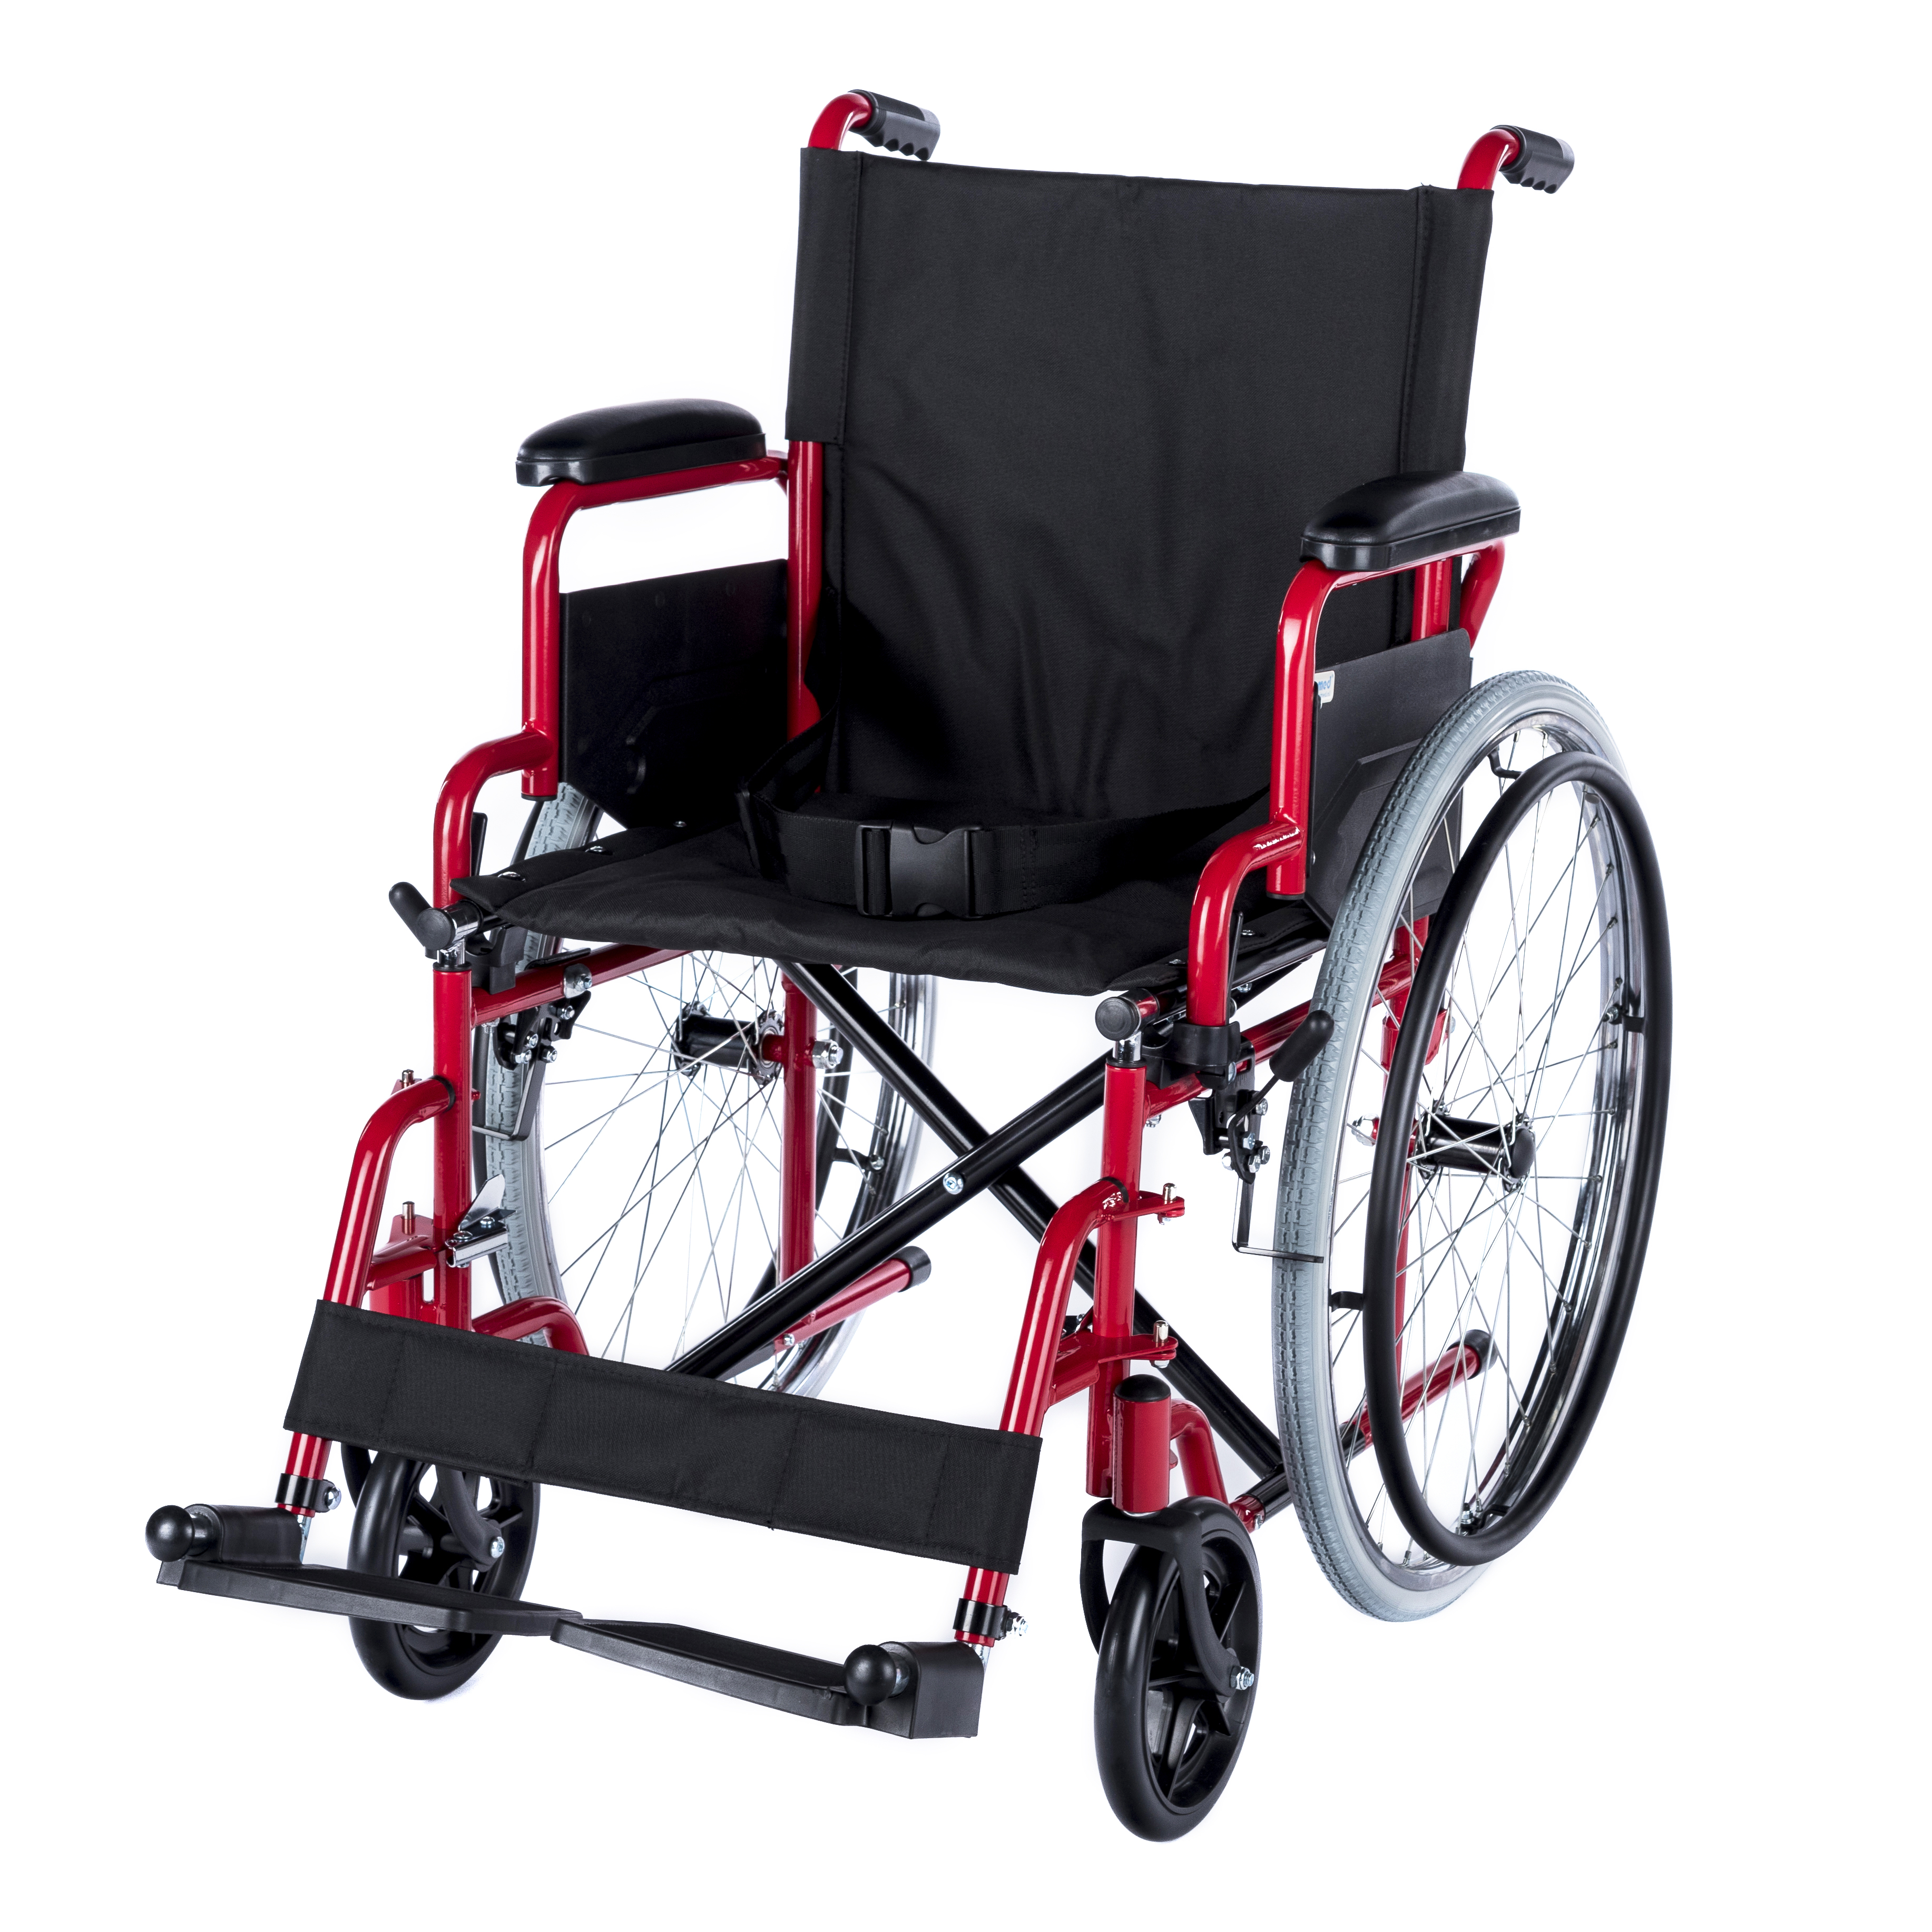 WHE-01-RED Romed faltbarer Standard-Rollstuhl mit klappbare Armlehne und Fußrasten.